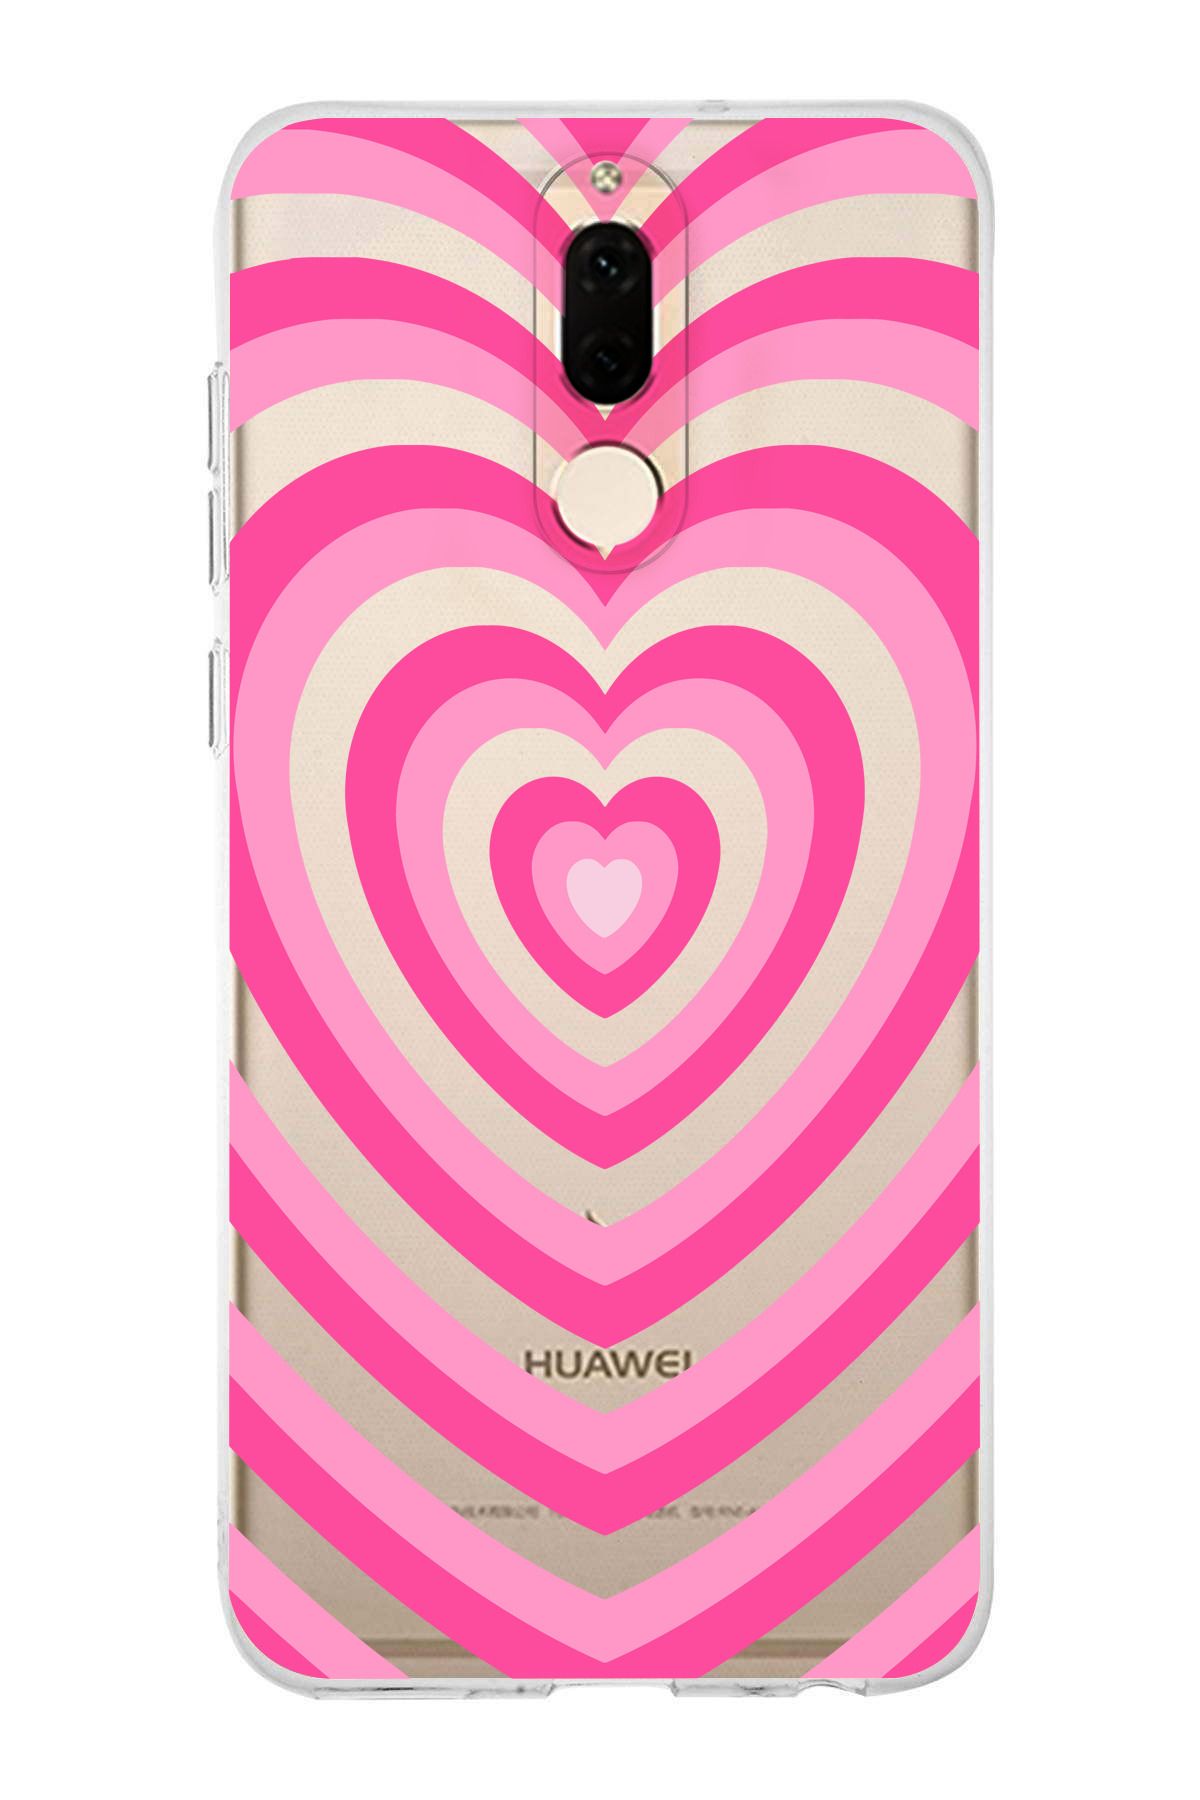 Elorakılıf Huawei Mate 10 Lite Uyumlu Pembe Kalpler Tasarımlı Premium Şeffaf Kılıf